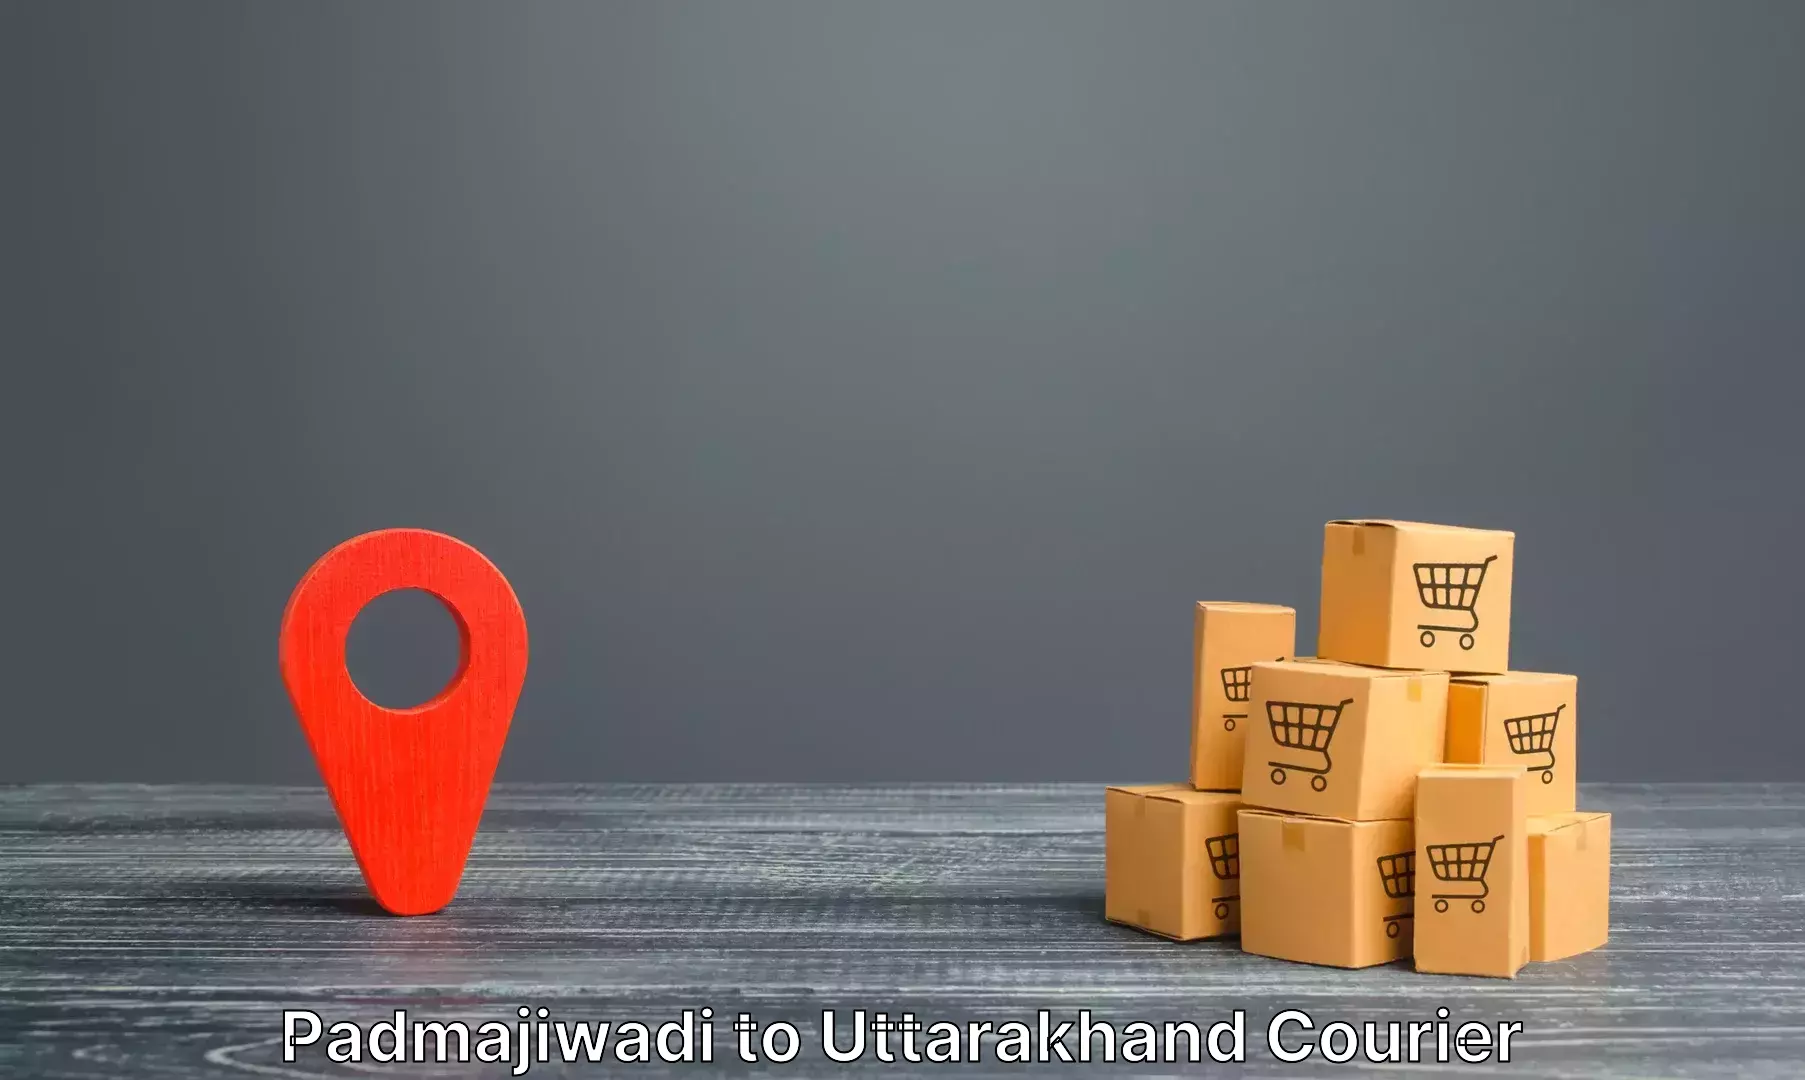 Baggage transport network Padmajiwadi to Uttarakhand